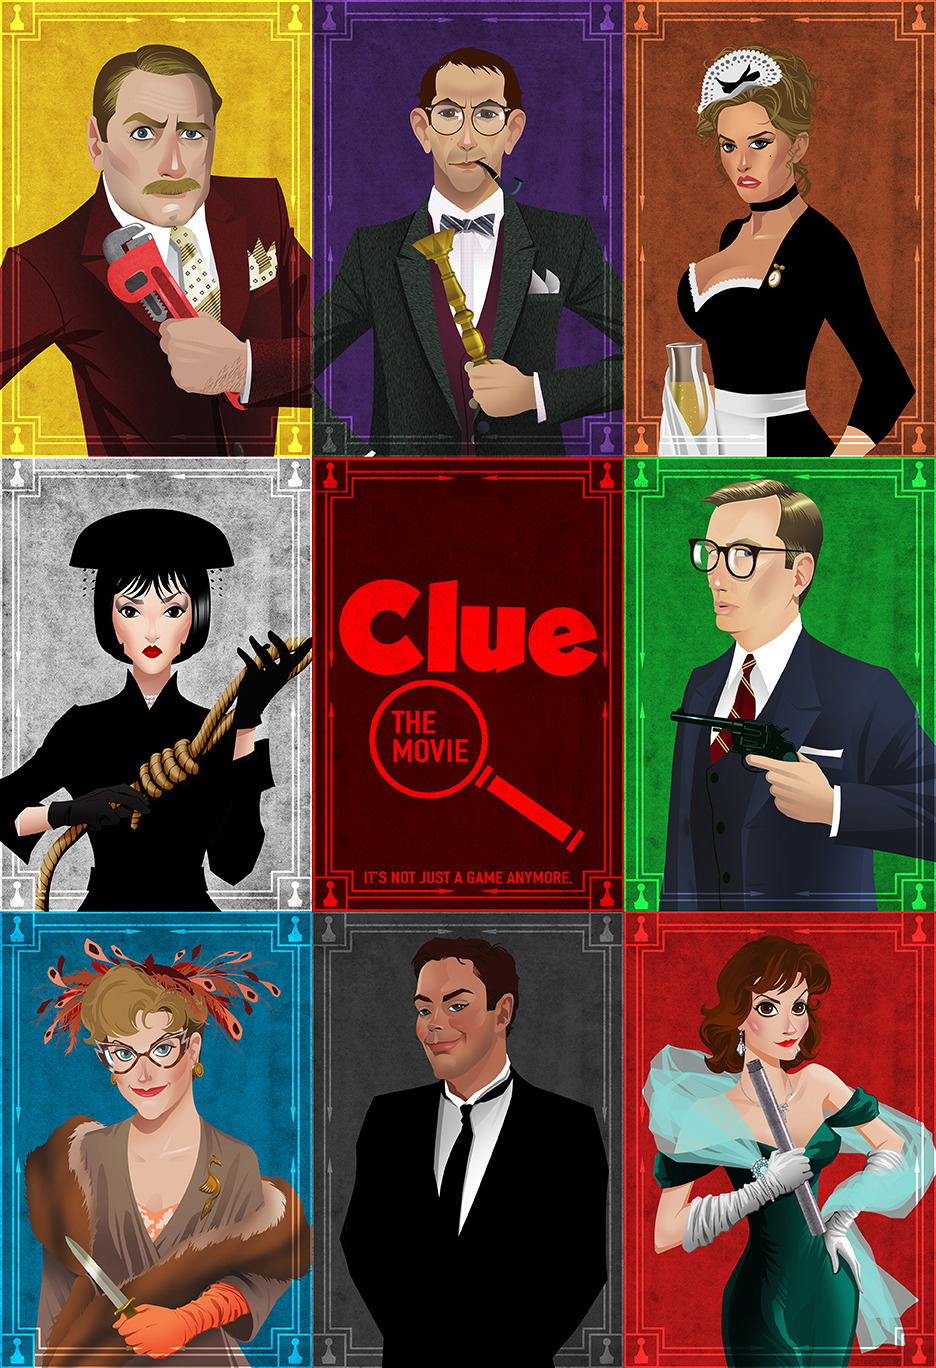 Sony planea llevar 'Clue' a cine y televisión 11